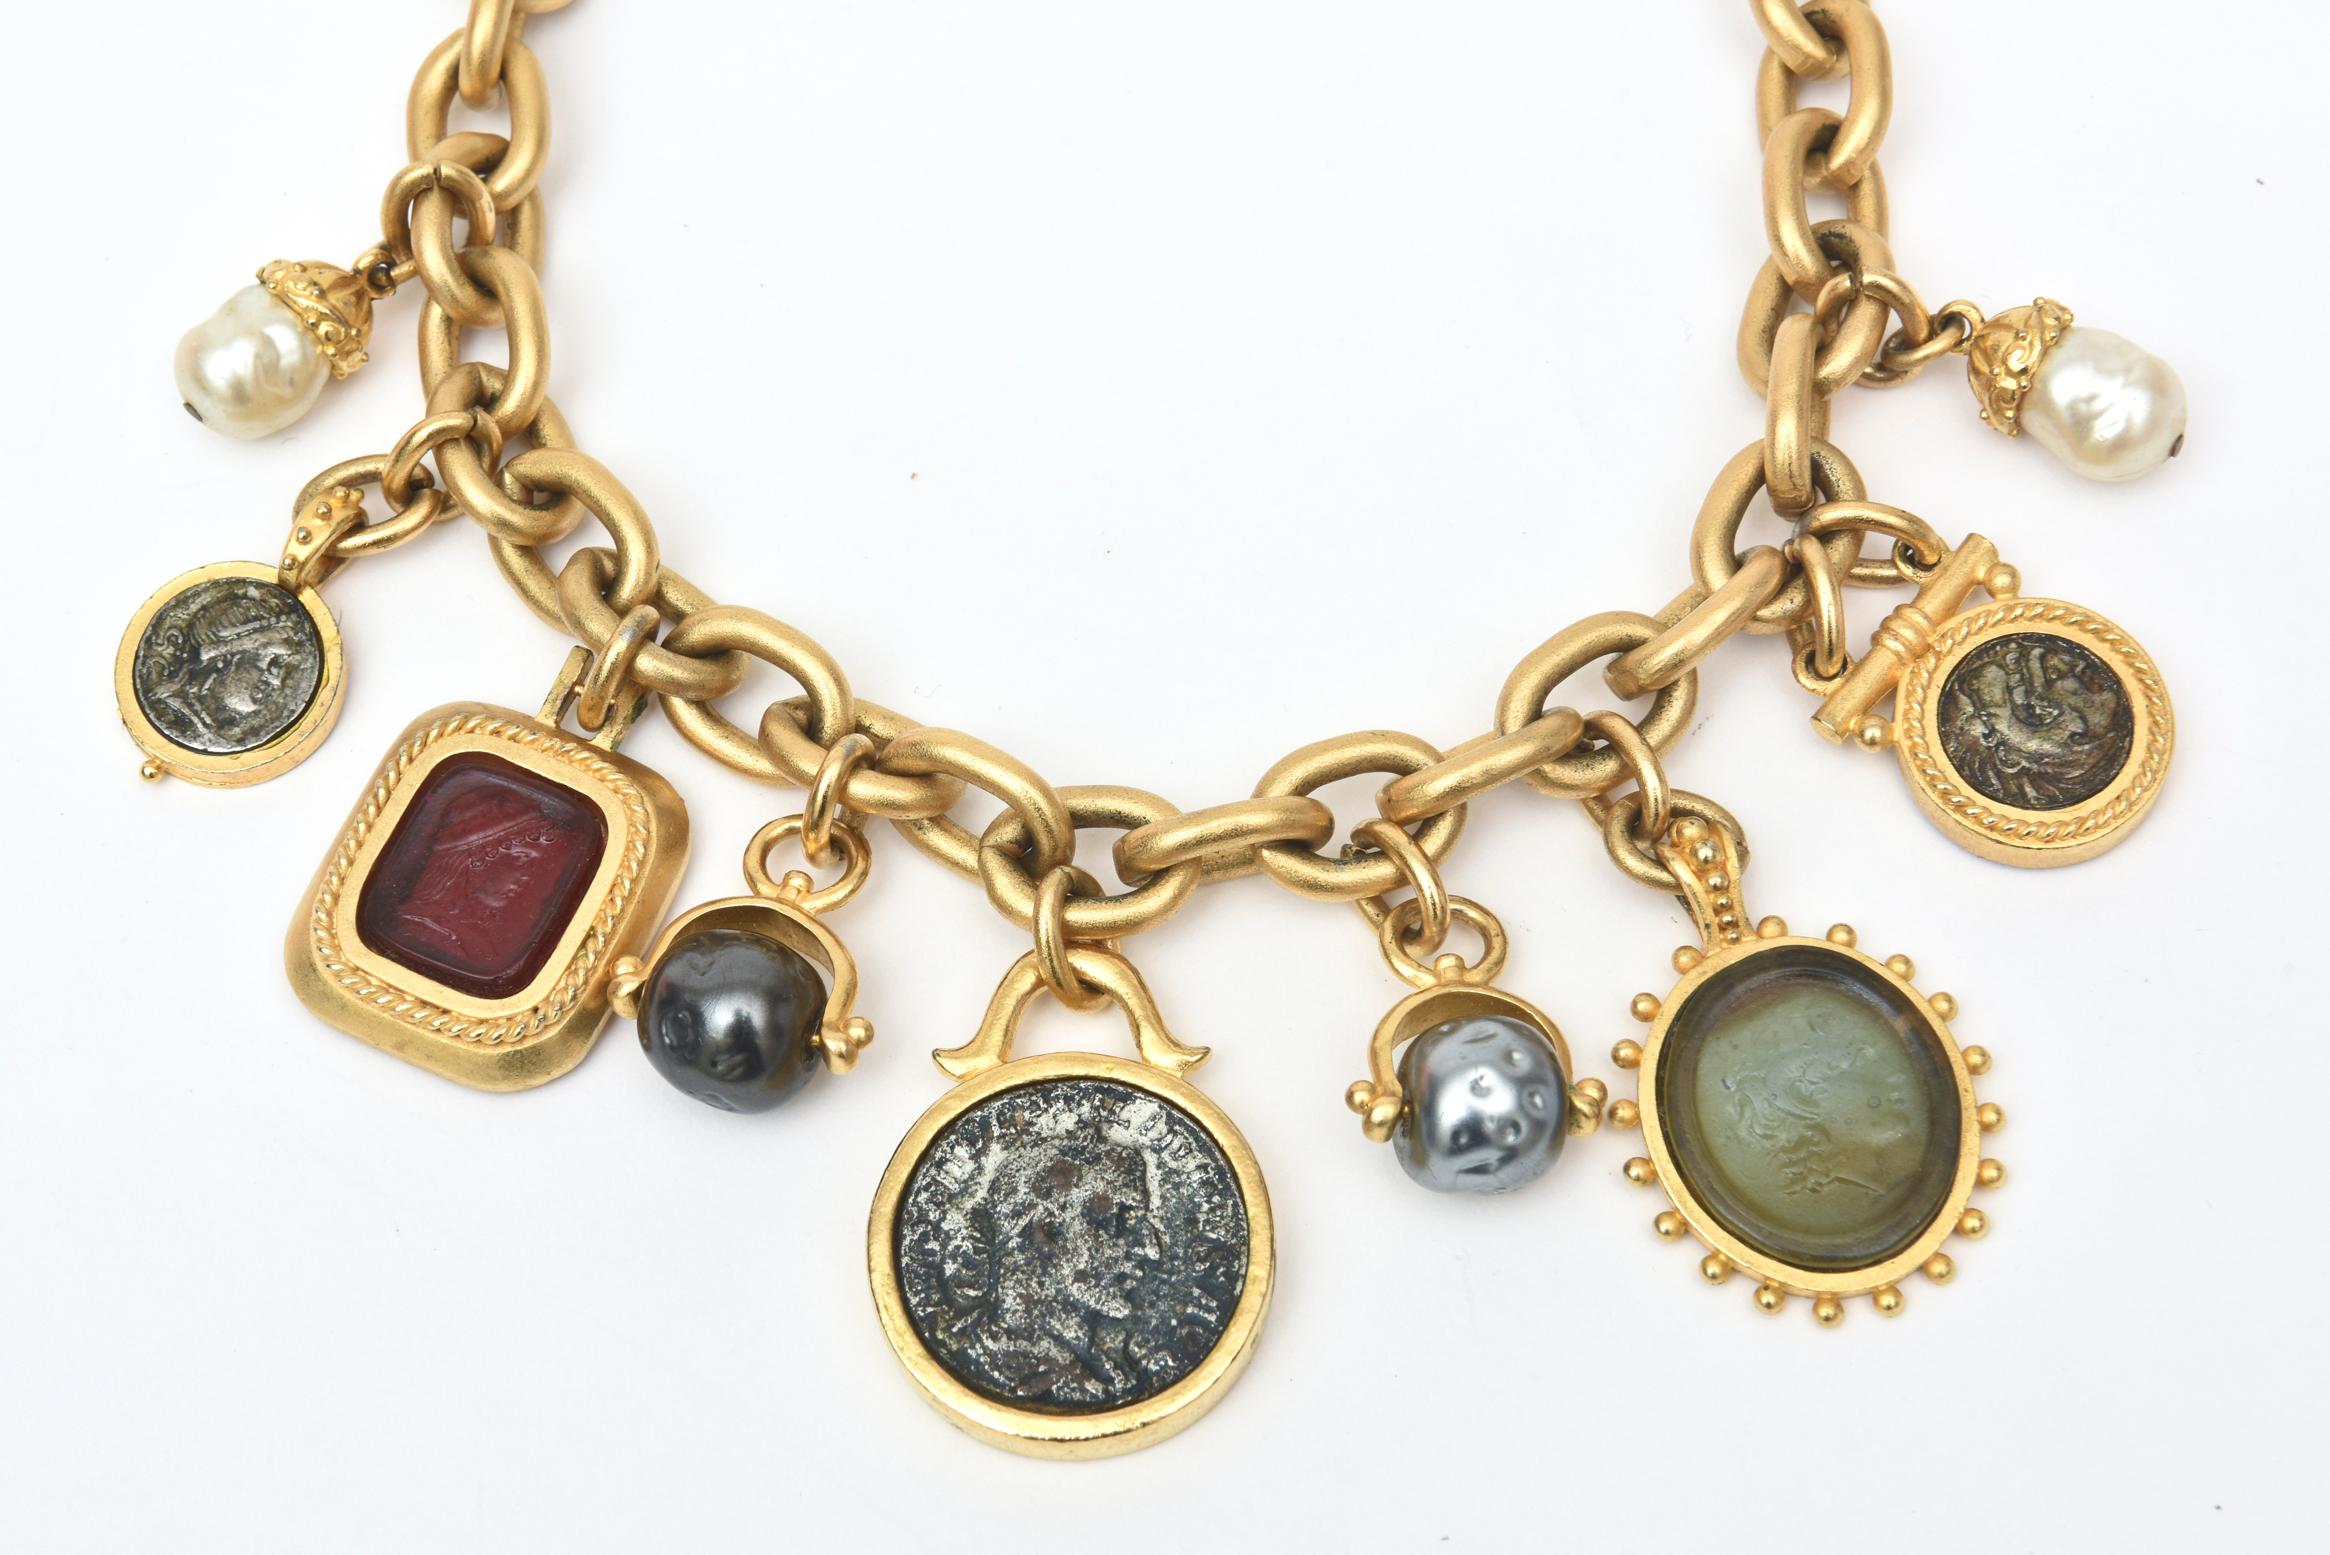 Ce magnifique collier pendentif d'inspiration romaine, serti et forgé à la main, est signé Linda Levinson. Il date des années 80. Elle a été créatrice de bijoux à une époque à New York. Elle est issue d'une longue lignée de dynasties